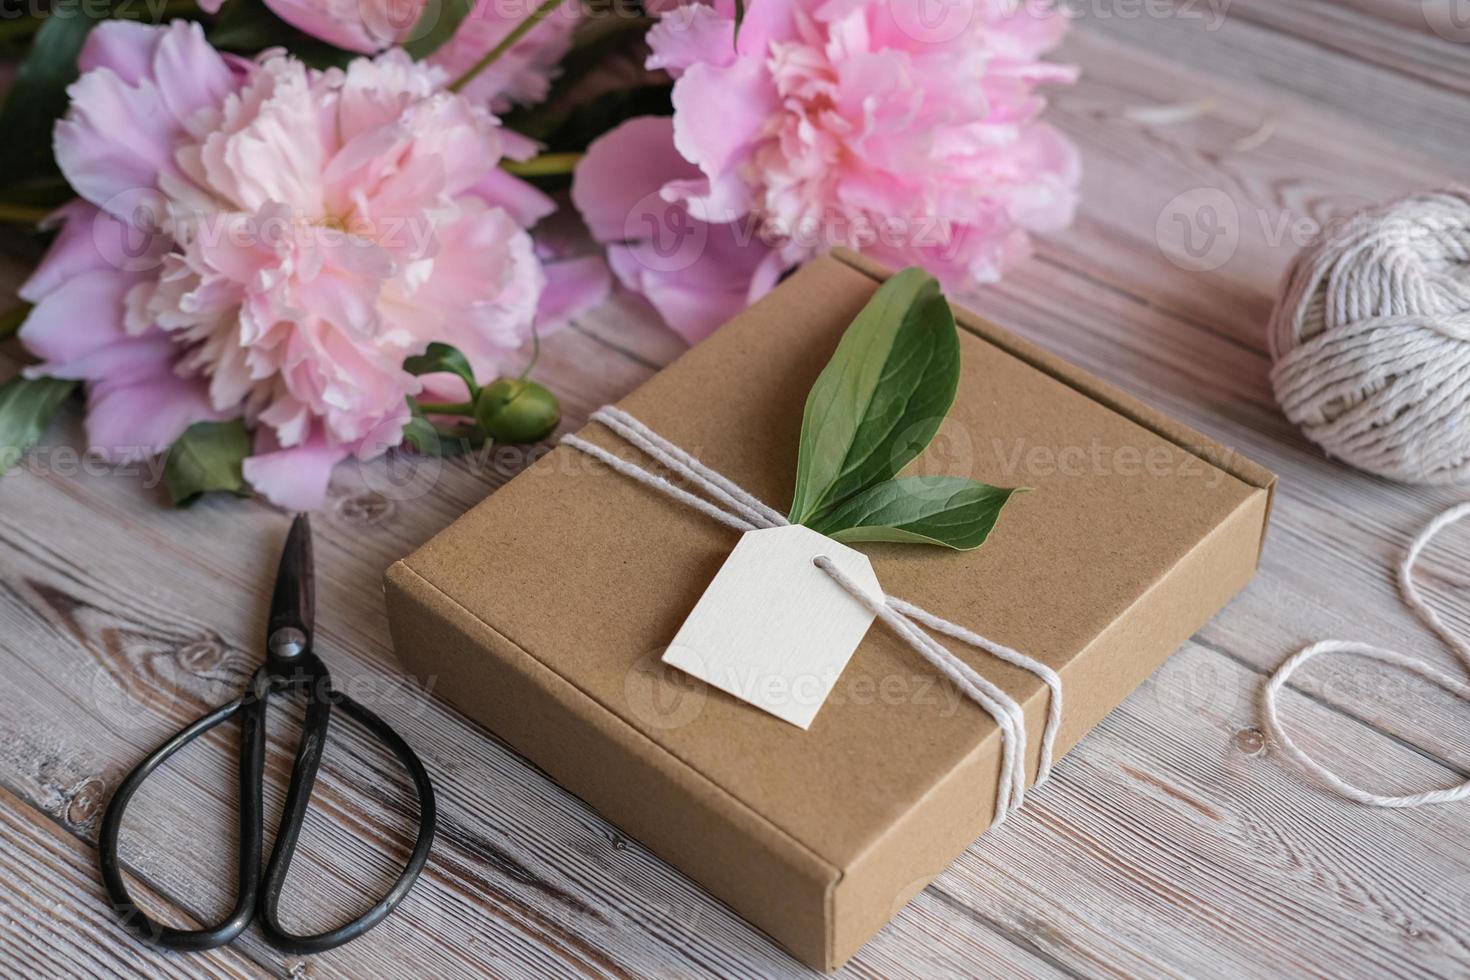 bespotten omhoog label, kraft geschenk doos versierd met bloemen pioenrozen. voorbereiding van cadeaus voor moeder dag, verjaardag, vrouwen vakantie. geschenk omhulsel idee foto